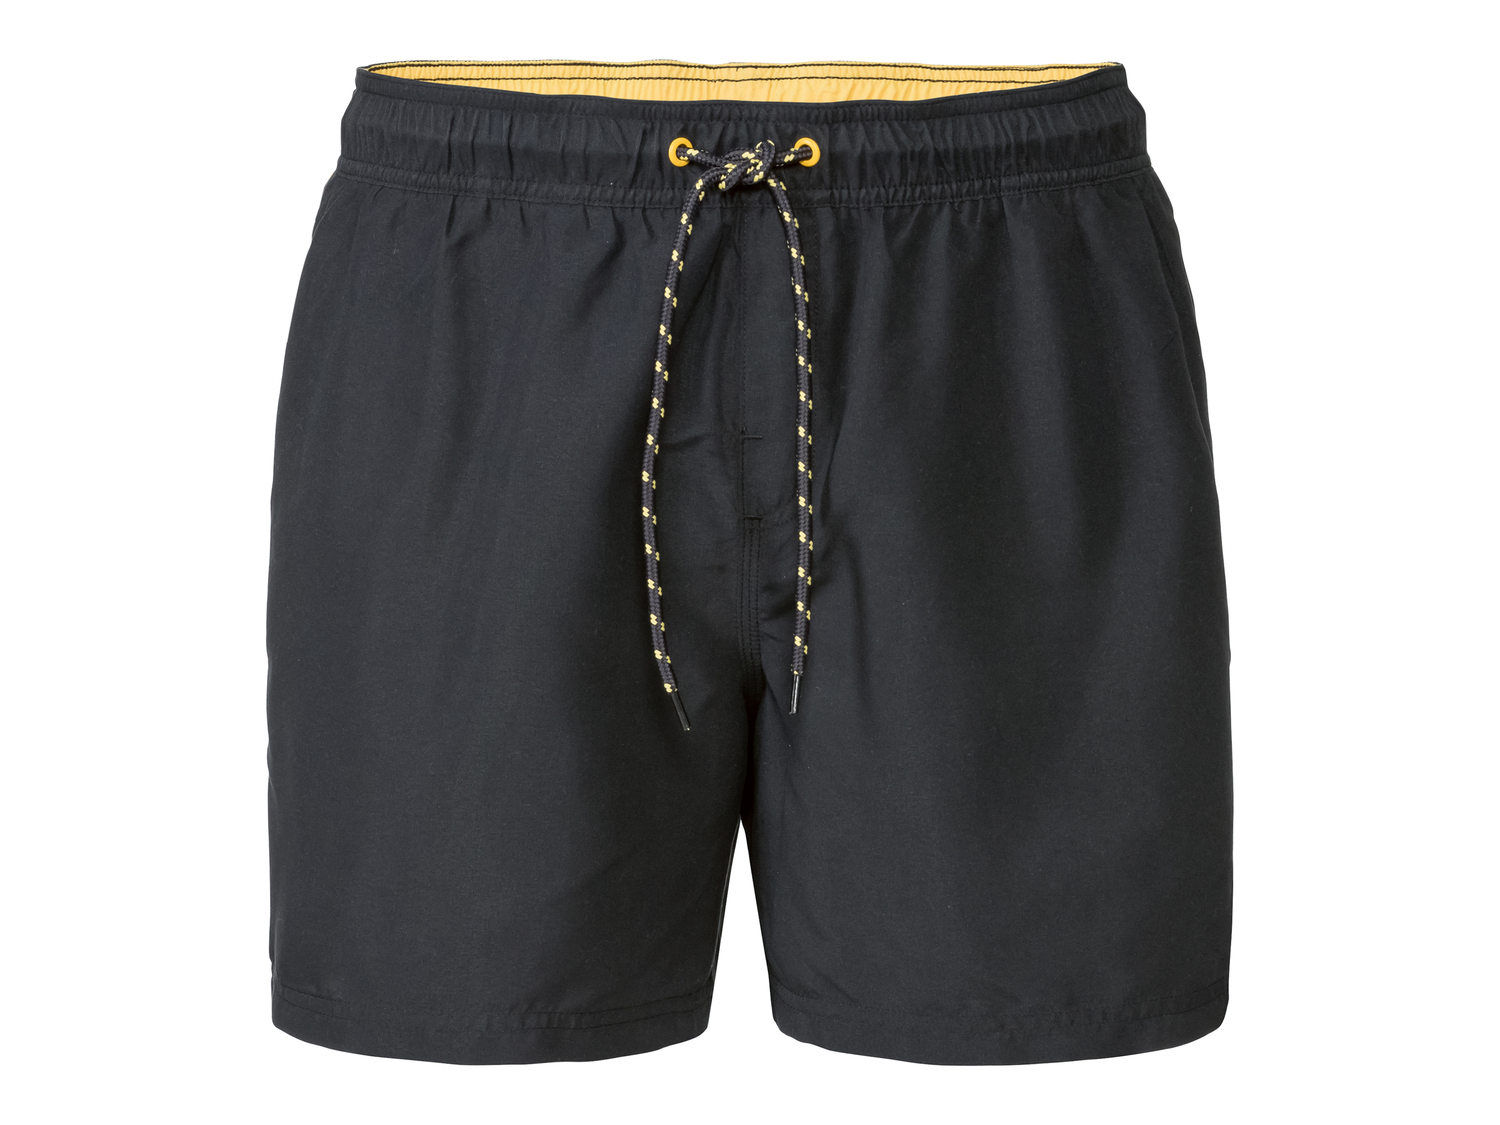 Shorts mare da uomo Livergy, prezzo 5.99 &#8364; 
Misure: S-XL
Taglie disponibili

Caratteristiche

- ...